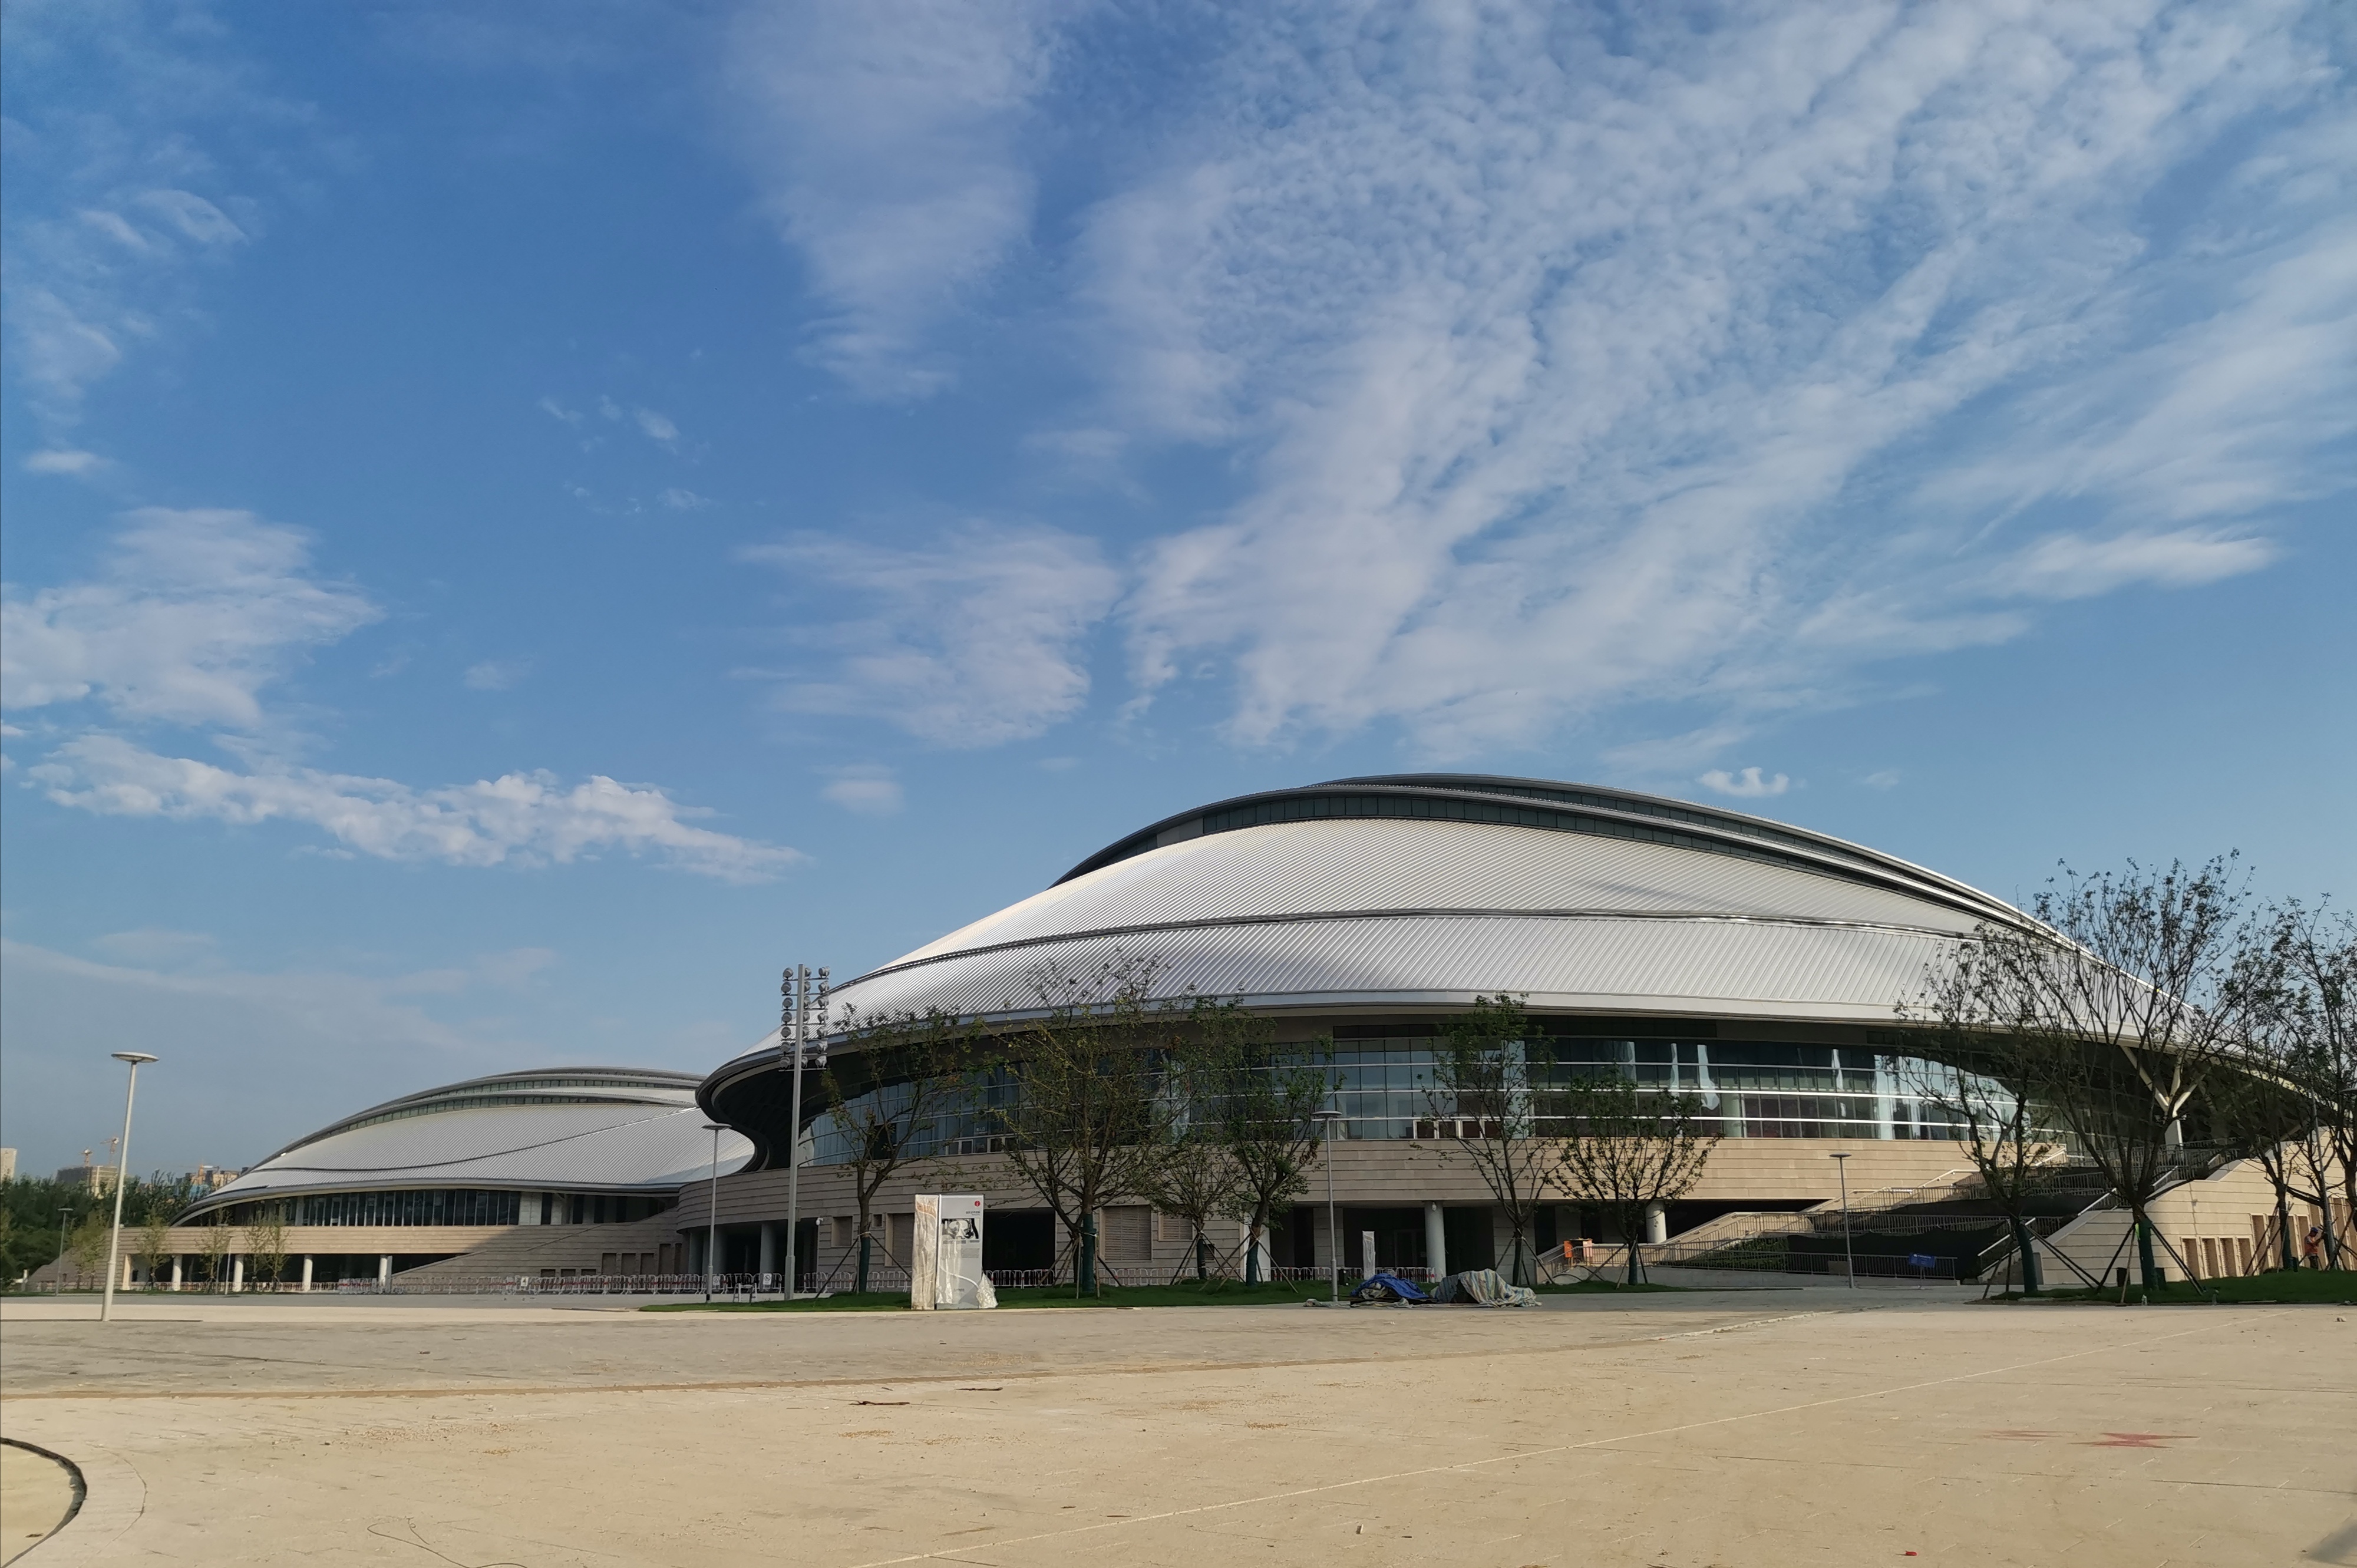 体育馆以灵动飘逸的银色屋面融合曲线平台,多级步道及双层柱廊等立面